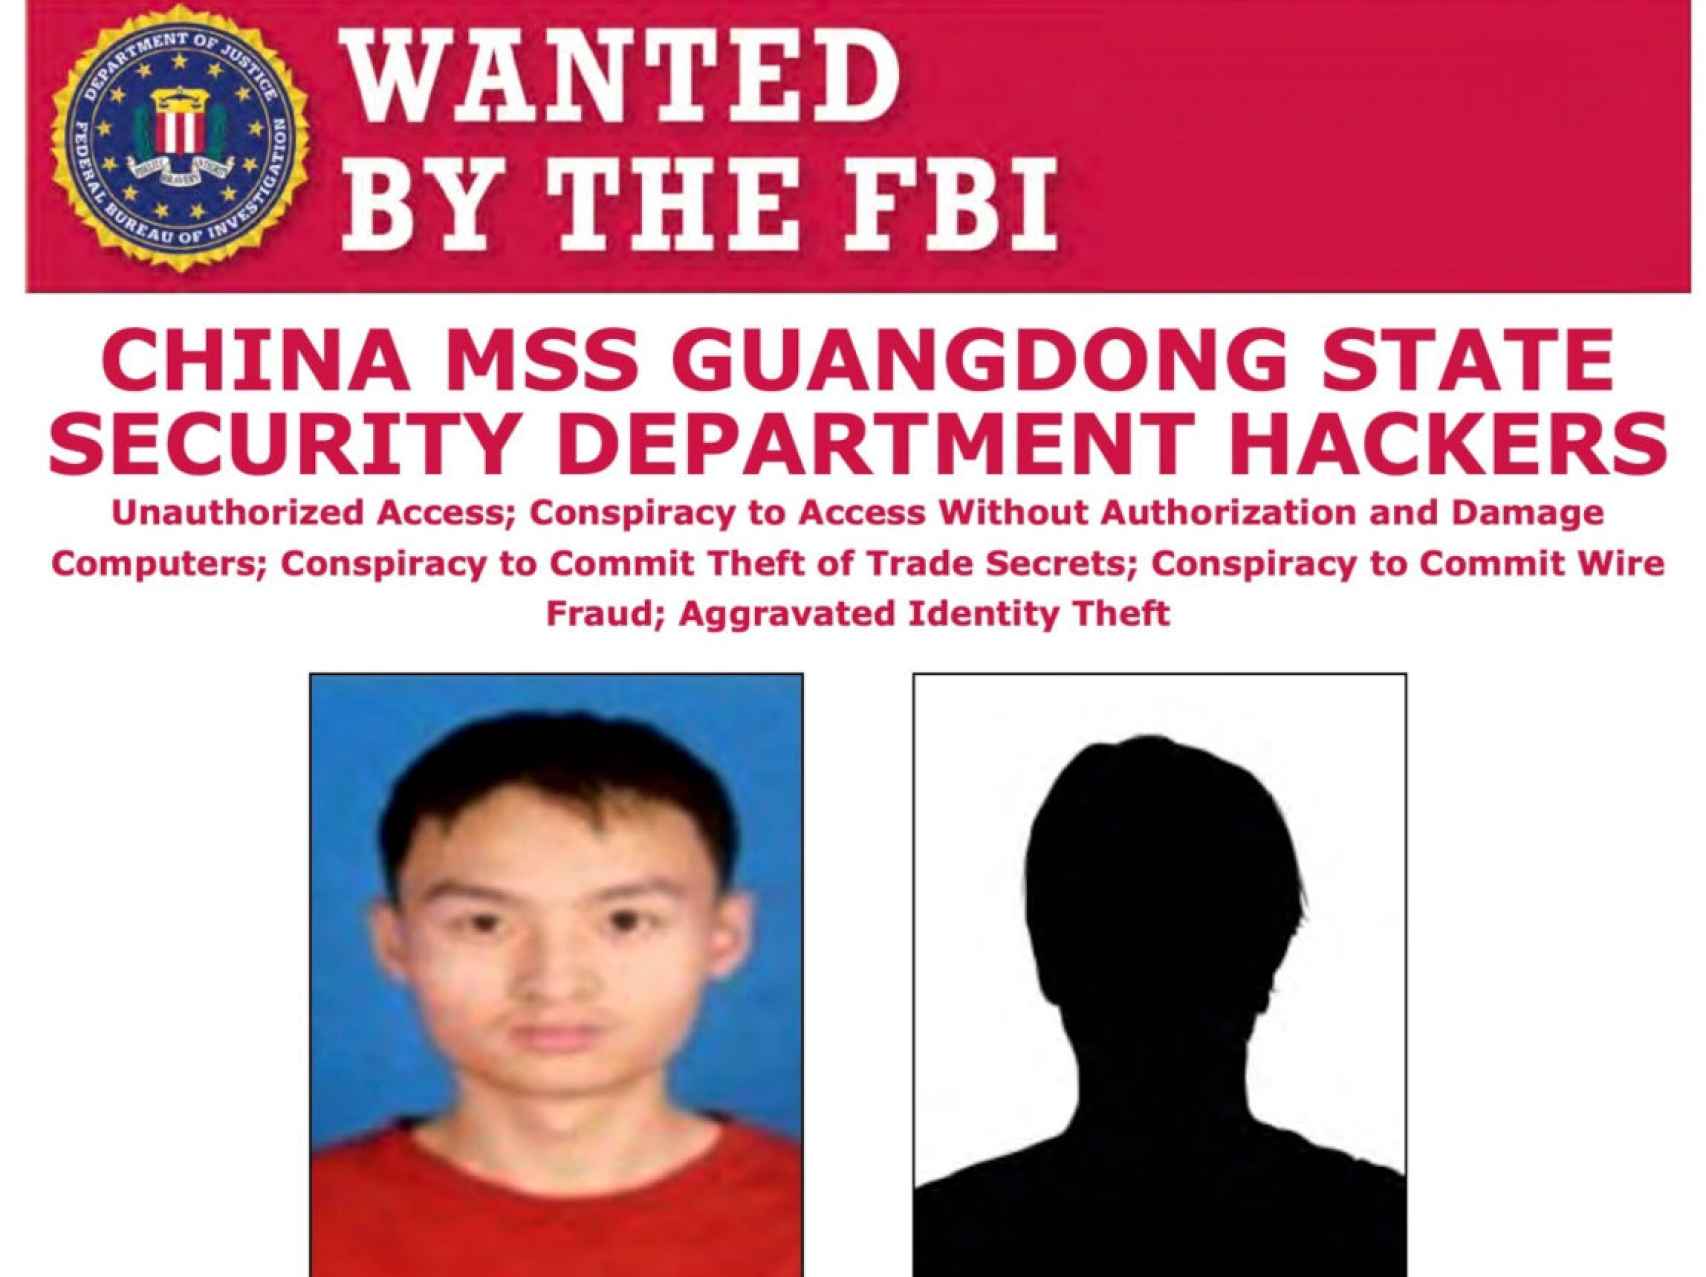 Aviso de búsqueda del FBI de los dos hackers chinos